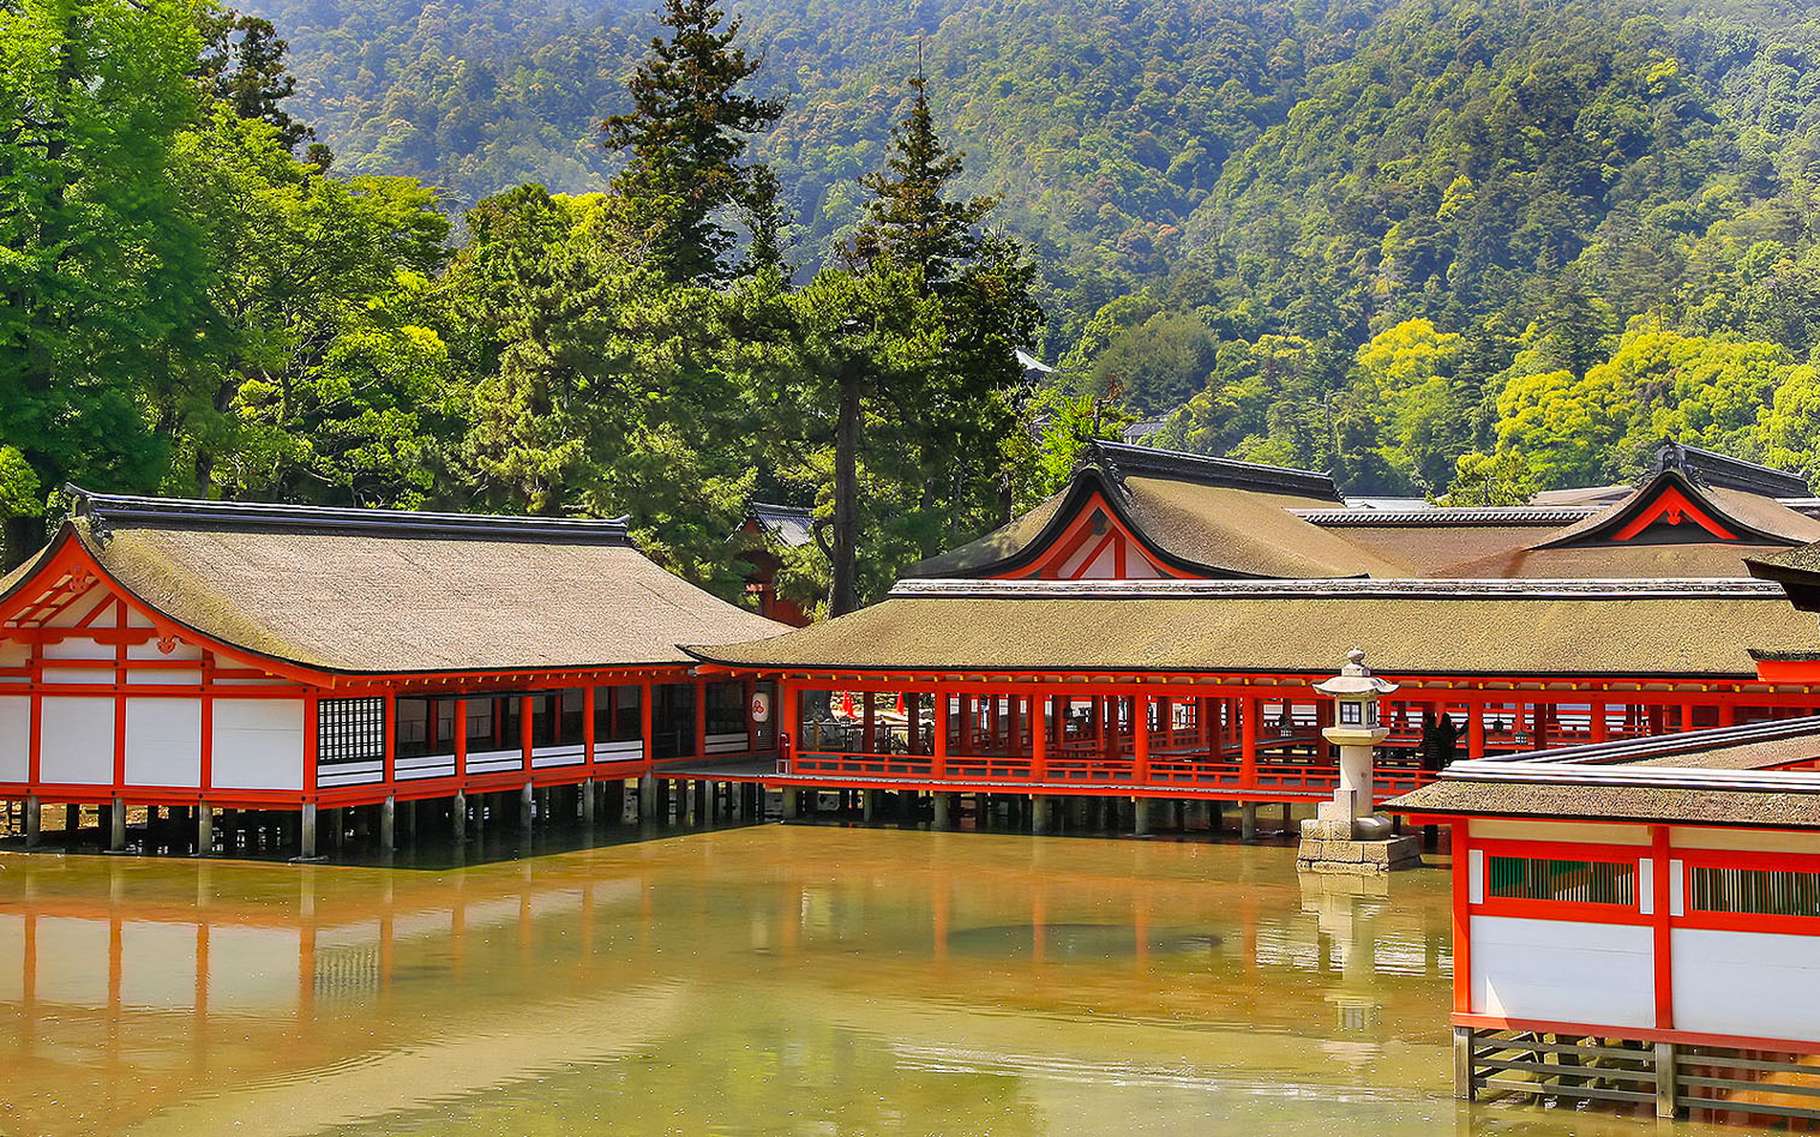 Le temple Itsukushima-jinja est situé non loin du fameux portique flottant de Miyajima. Avec ce dernier, le temple flottant est un incontournable de la région. Son architecture raffinée date de l'époque Heian, laquée de rouge vermillon comme le portique, contraste avec le bleu de l'eau lorsque la marée haute lui donne son aspect flottant.© Antoine, Tous droits réservés